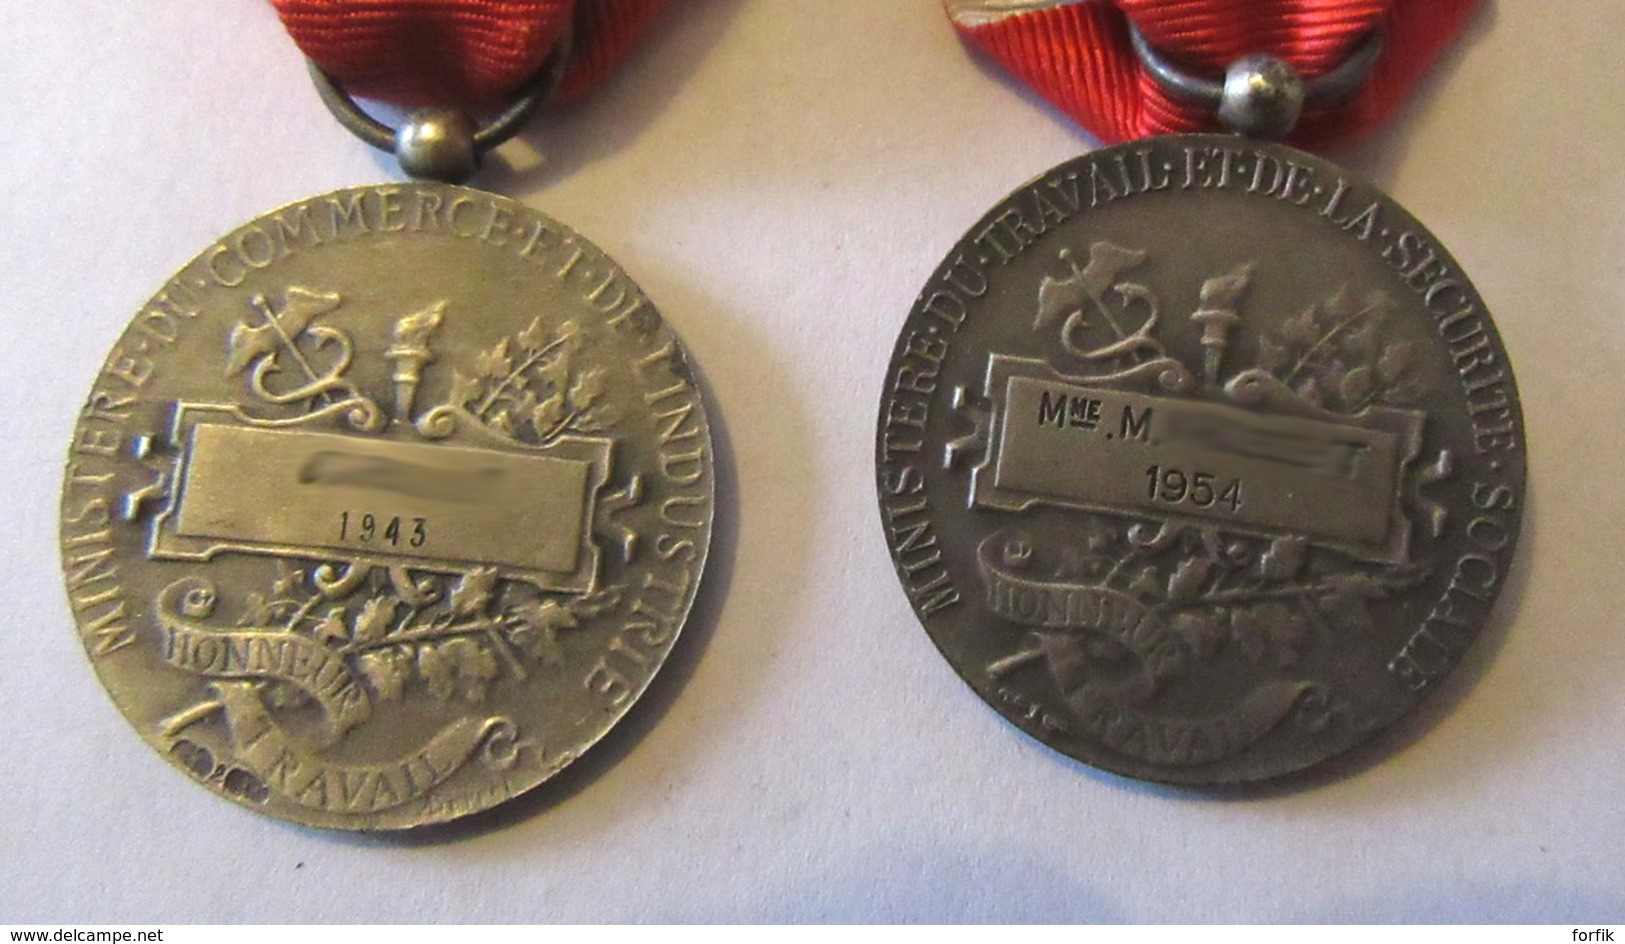 France - 2 Médailles D'Honneur Du Travail Attribuées En 1943 Et 1954 Avec Rubans - Professionnels / De Société